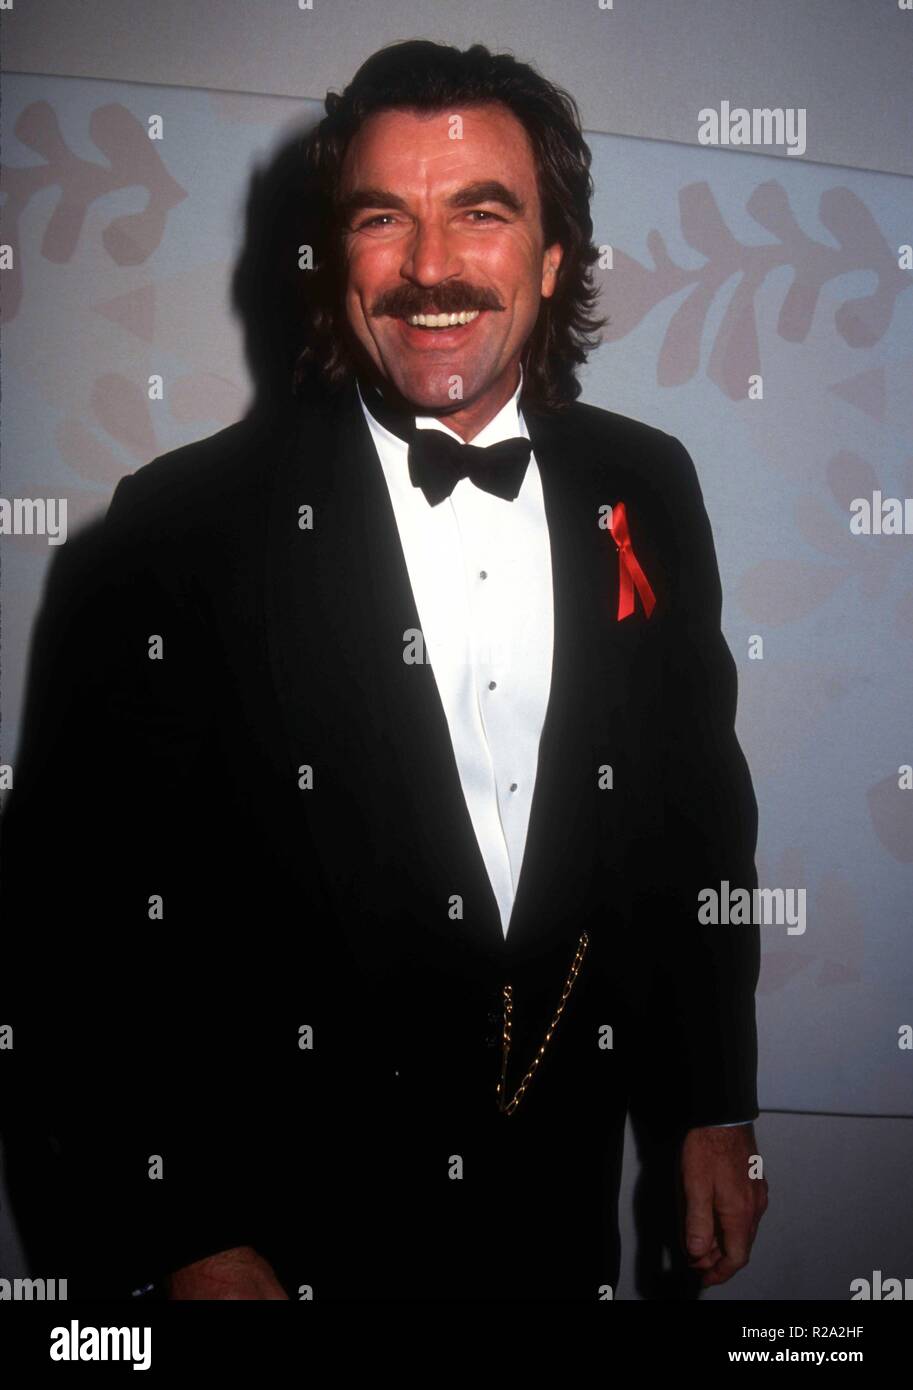 BEVERLY HILLS, Ca - 23. Januar: Schauspieler Tom Selleck besucht die 50. jährliche Golden Globe Awards am 23. Januar 1993 im Beverly Hilton Hotel in Beverly Hills, Kalifornien. Foto von Barry King/Alamy Stock Foto Stockfoto